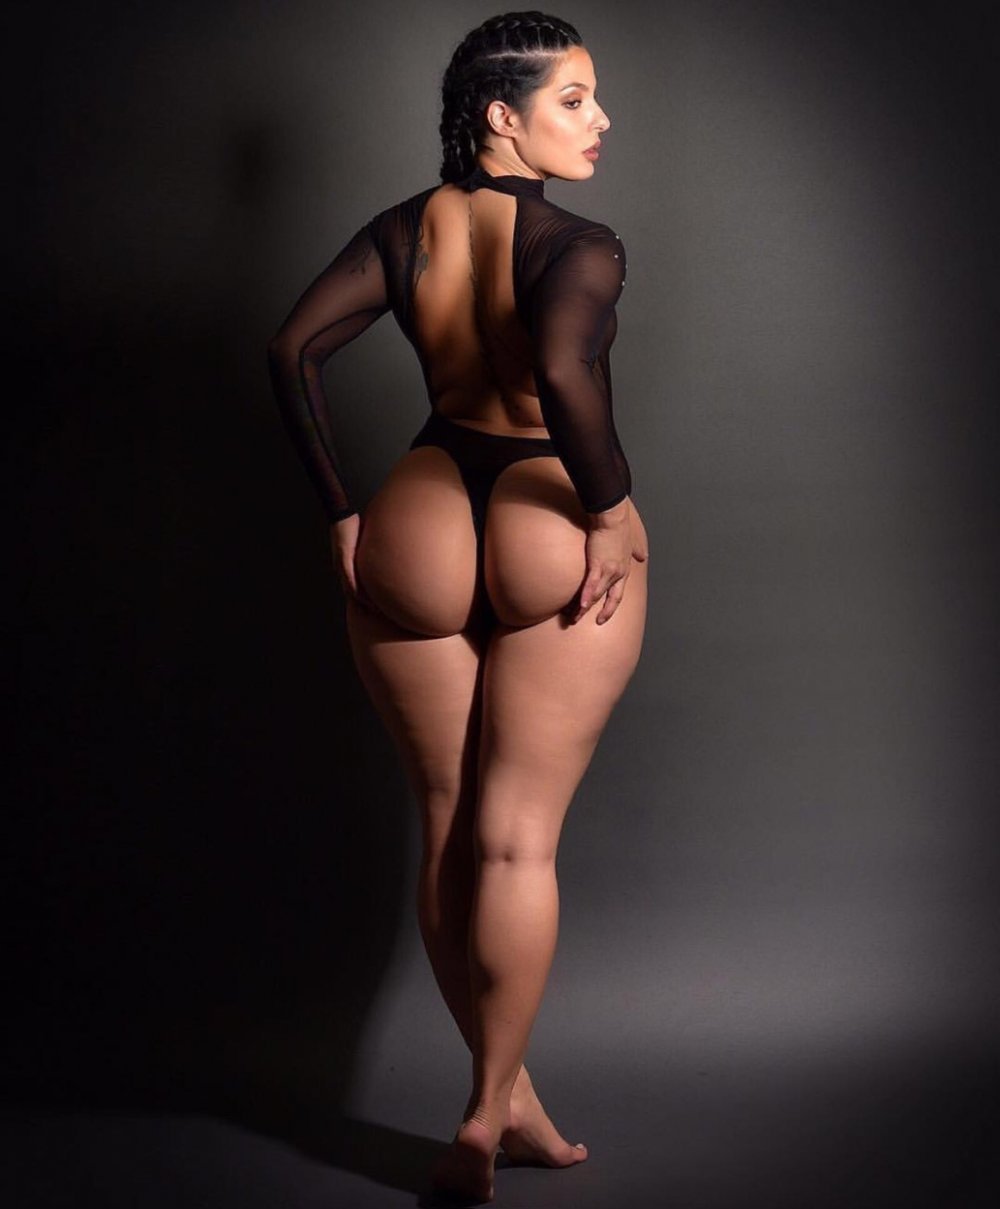 Big Ass Hispanic Women Porn - Big Booty Latina - 27 photos